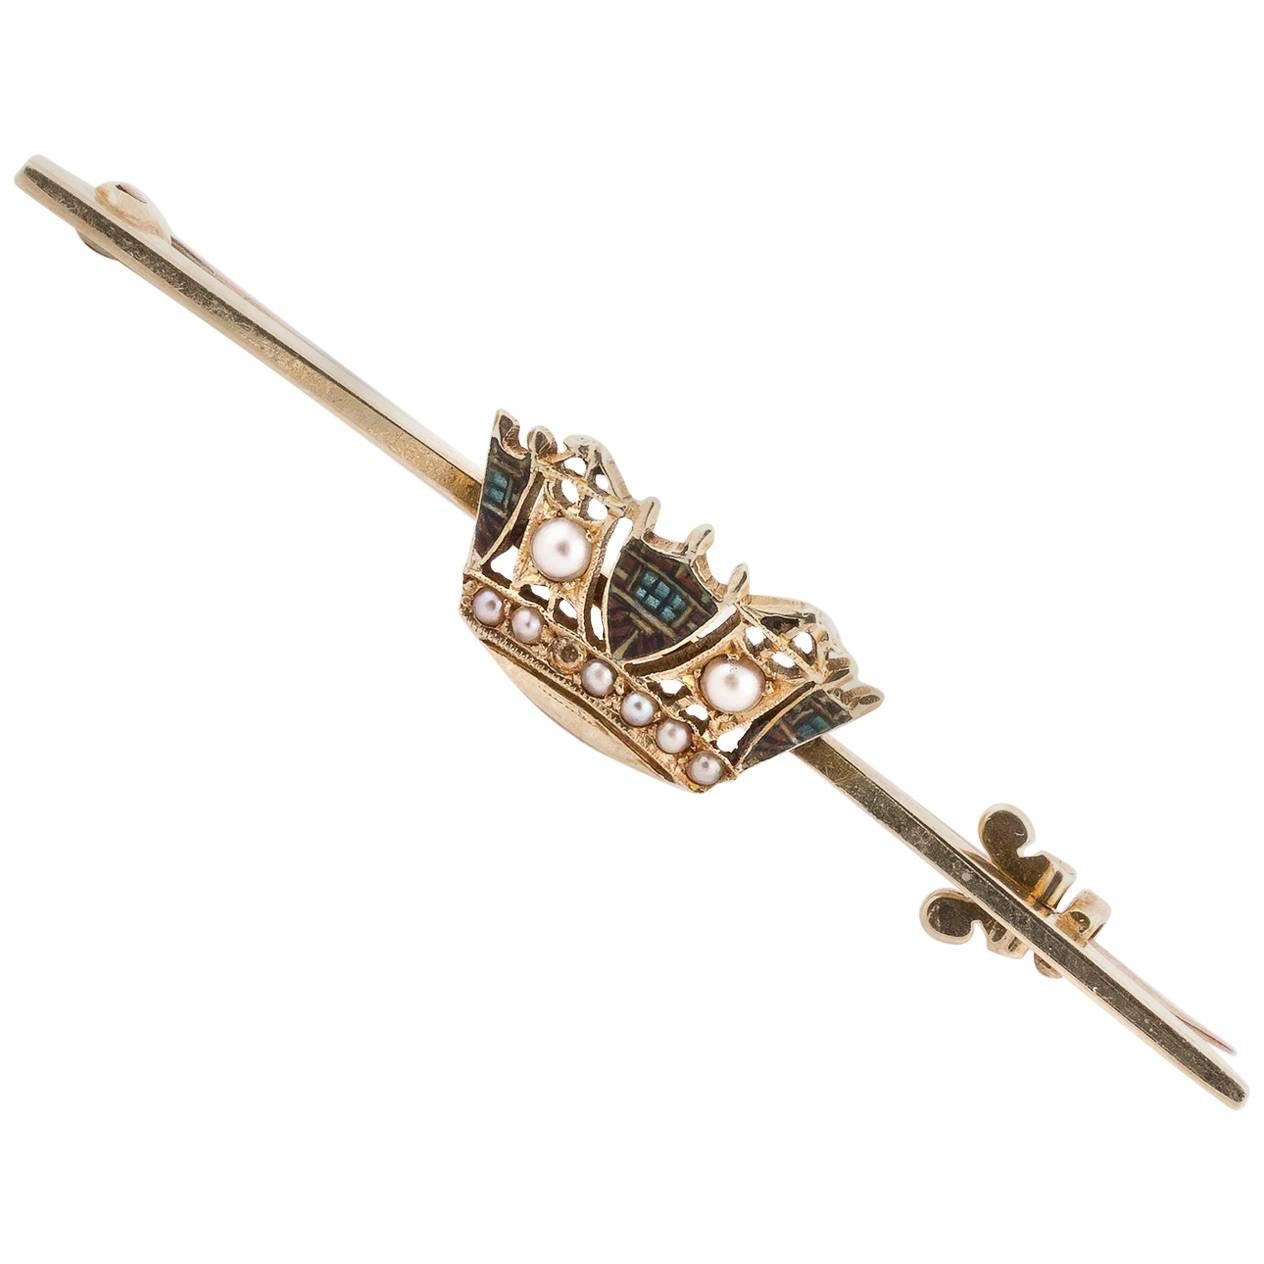 Épingle en or de la fin de l'époque victorienne avec une couronne en micro-perles et émail